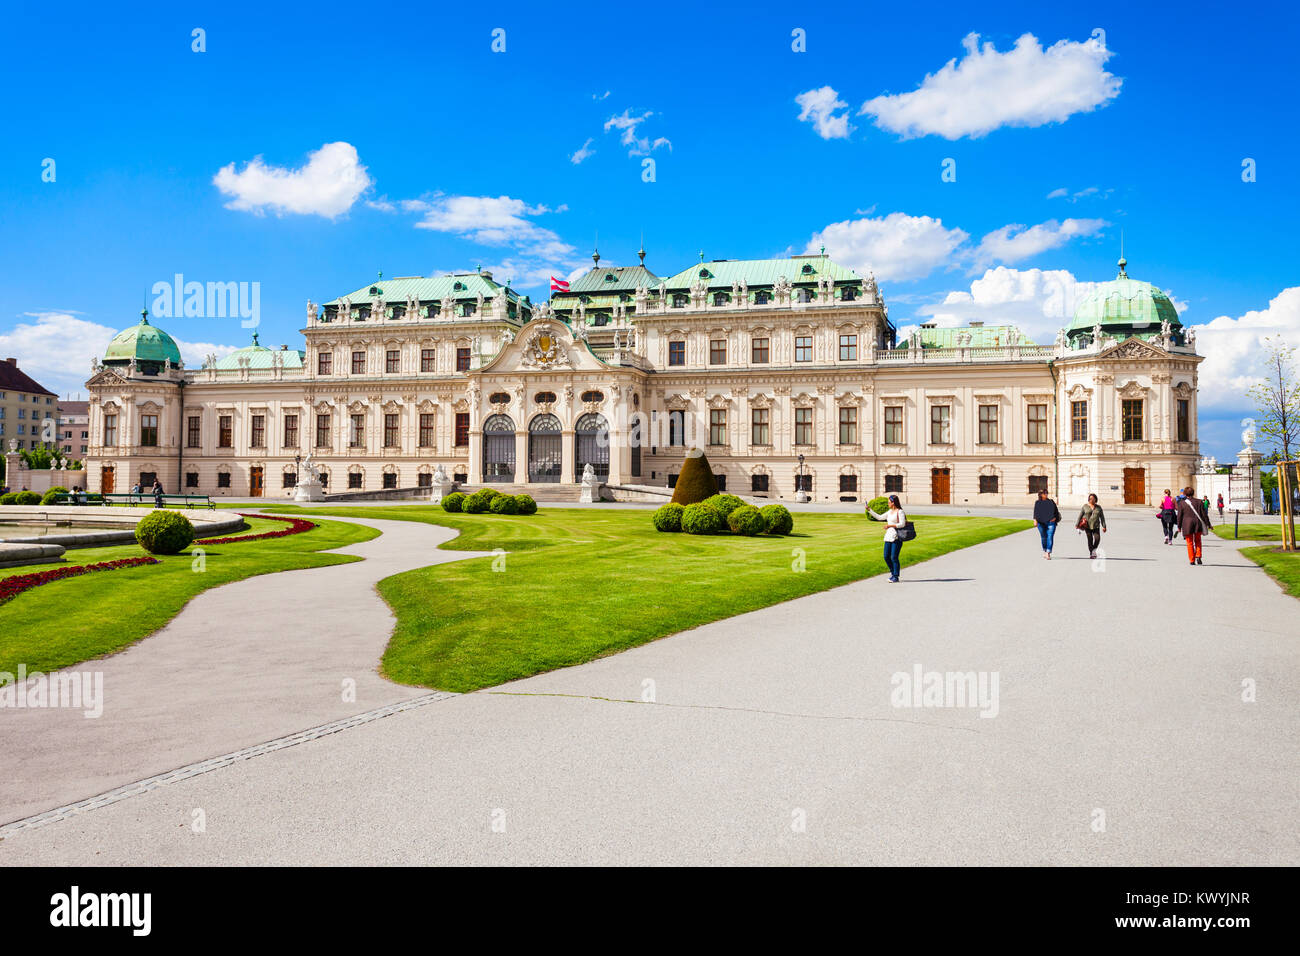 Le Palais du Belvédère est un bâtiment historique complexe à Vienne, Autriche. Belvedere a été construit comme résidence d'été pour le prince Eugène de Savoie. Banque D'Images